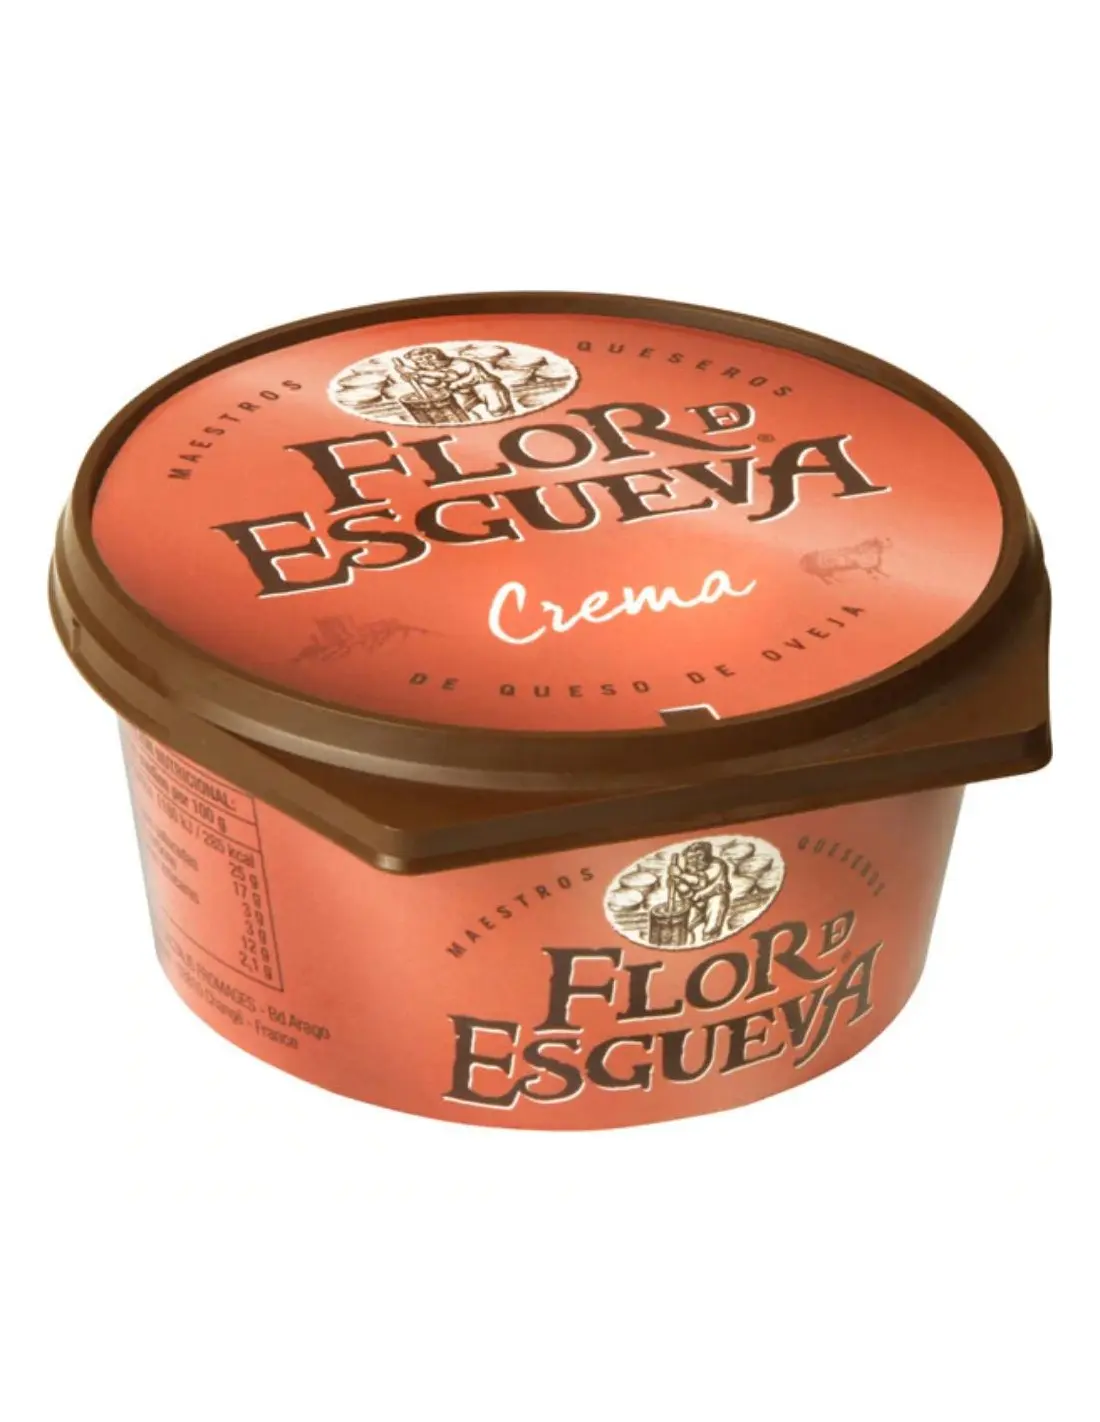 crema de queso flor de esgueva - Cuánto cuesta el kilo de Flor de Esgueva